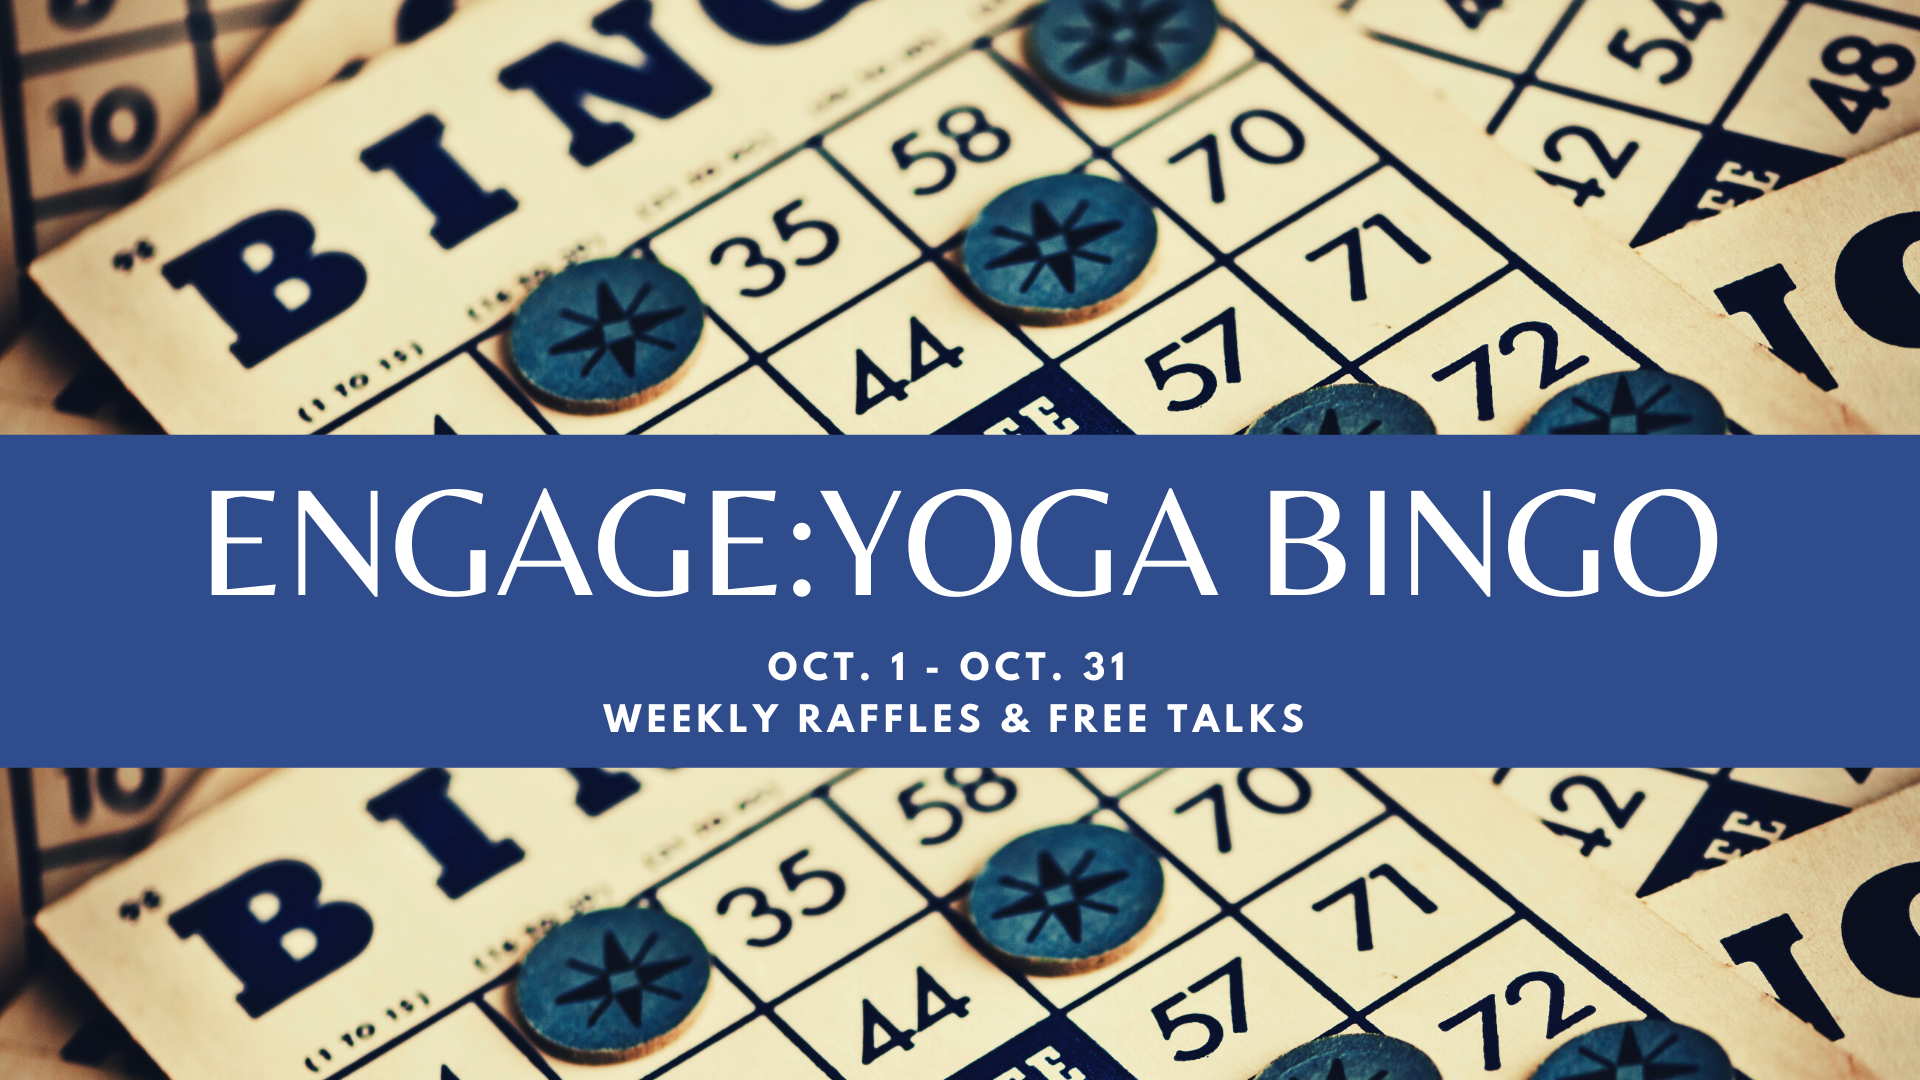 Engage: Yoga Bingo!